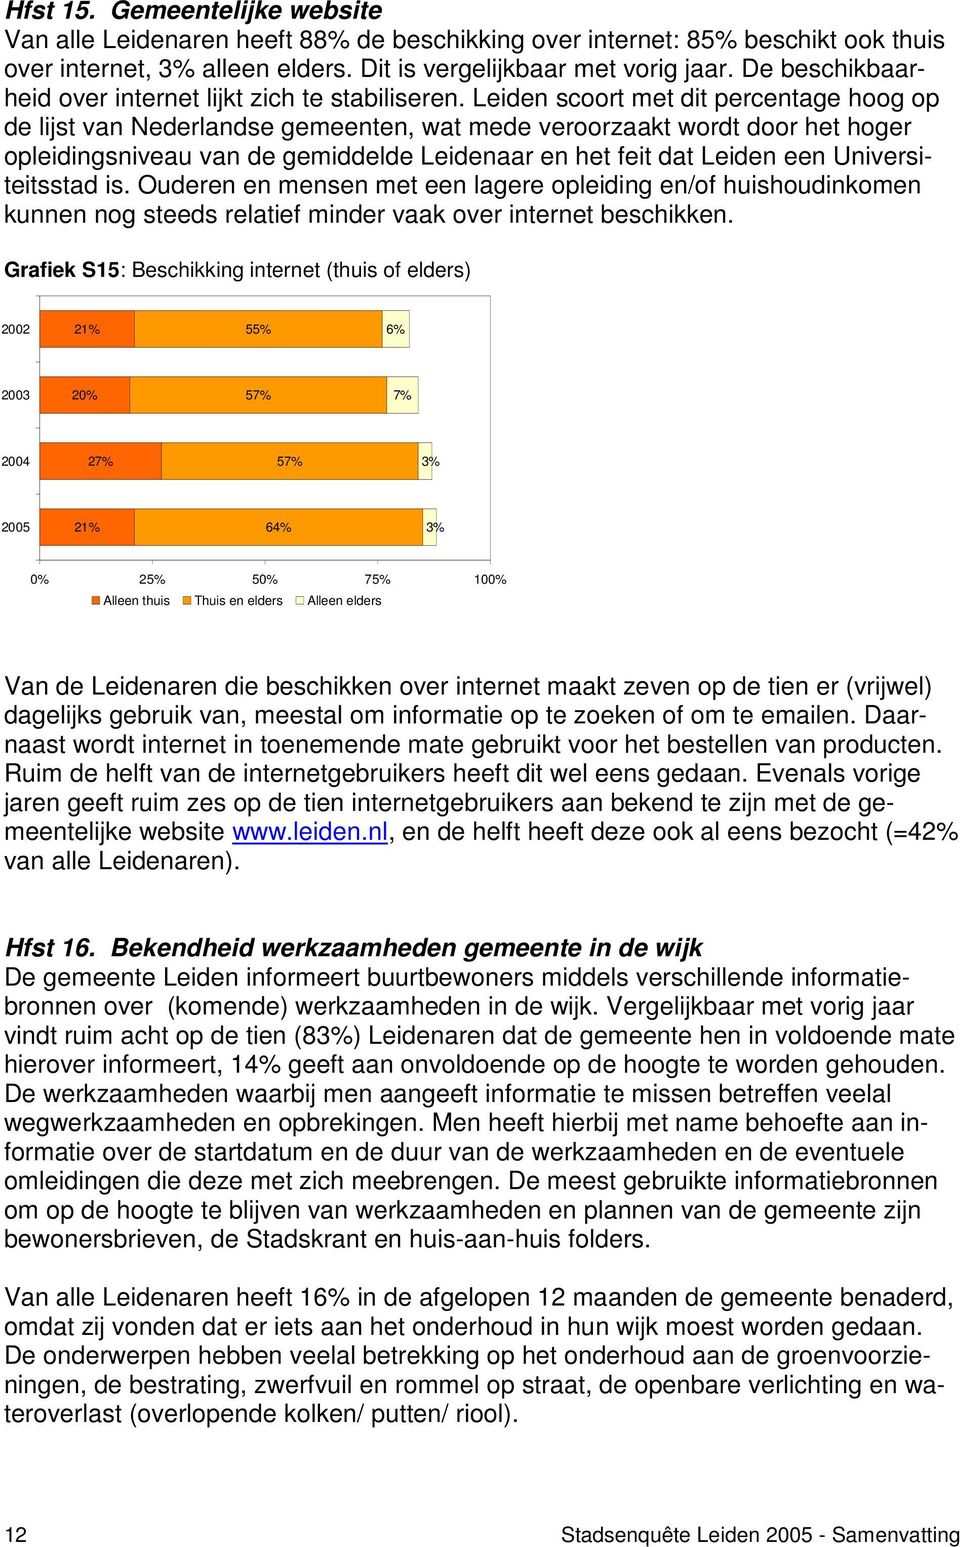 Leiden scoort met dit percentage hoog op de lijst van Nederlandse gemeenten, wat mede veroorzaakt wordt door het hoger opleidingsniveau van de gemiddelde Leidenaar en het feit dat Leiden een